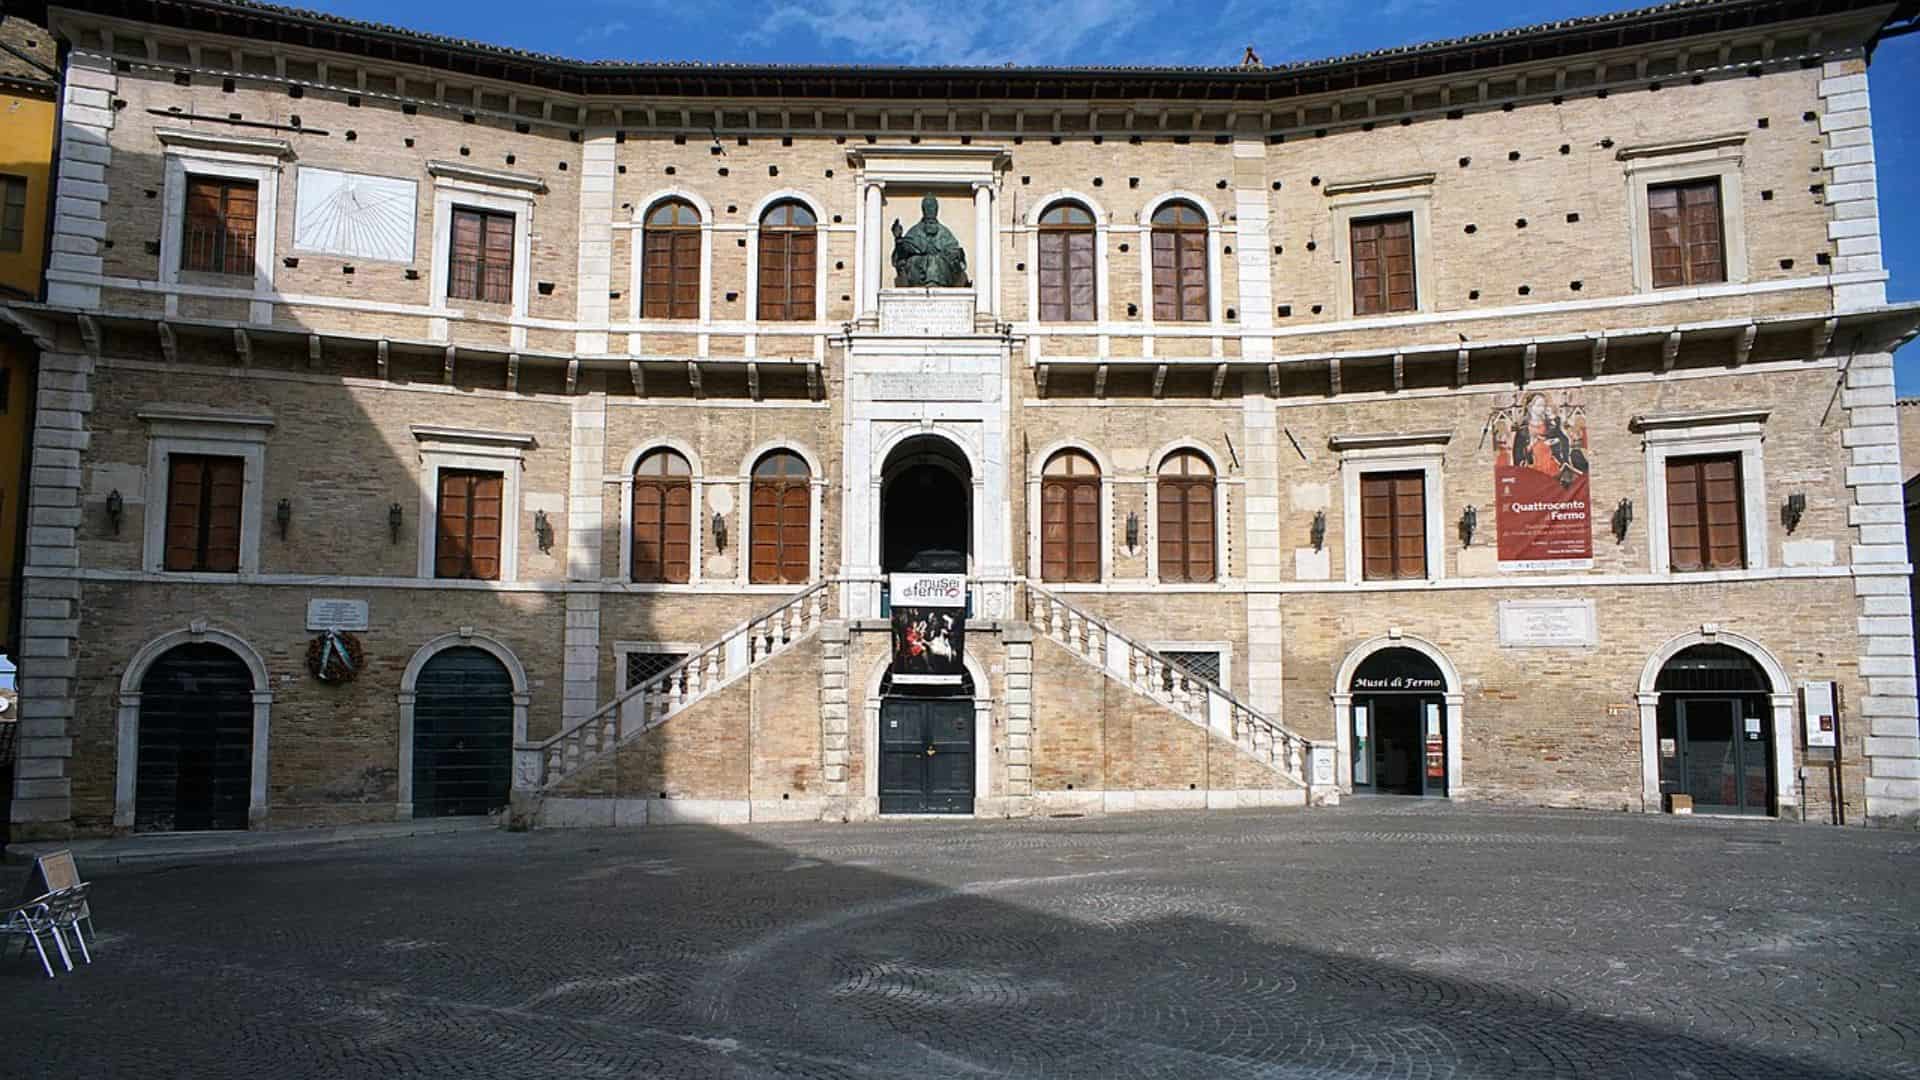 Palazzo Priori in Fermo (image source: padercol)